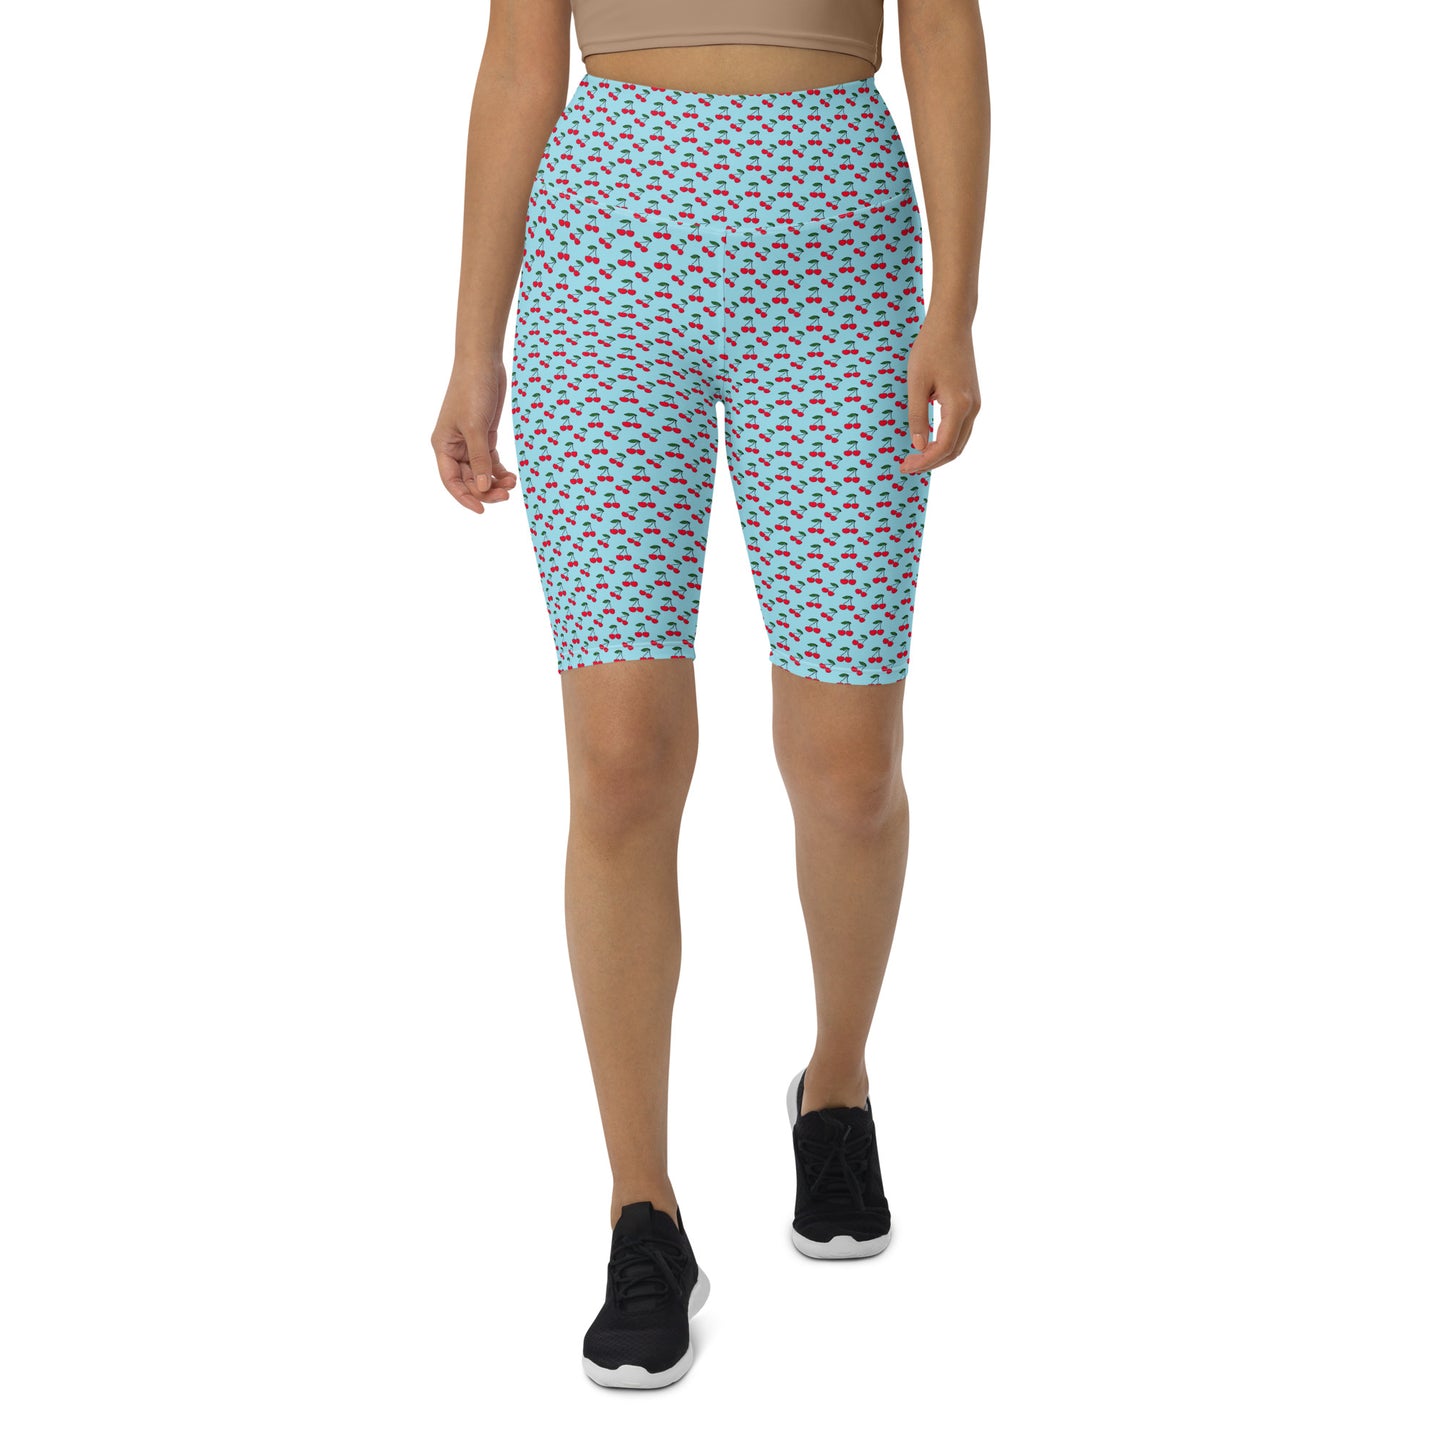 Cherry Blossom Blue High-Waisted Biker Shorts